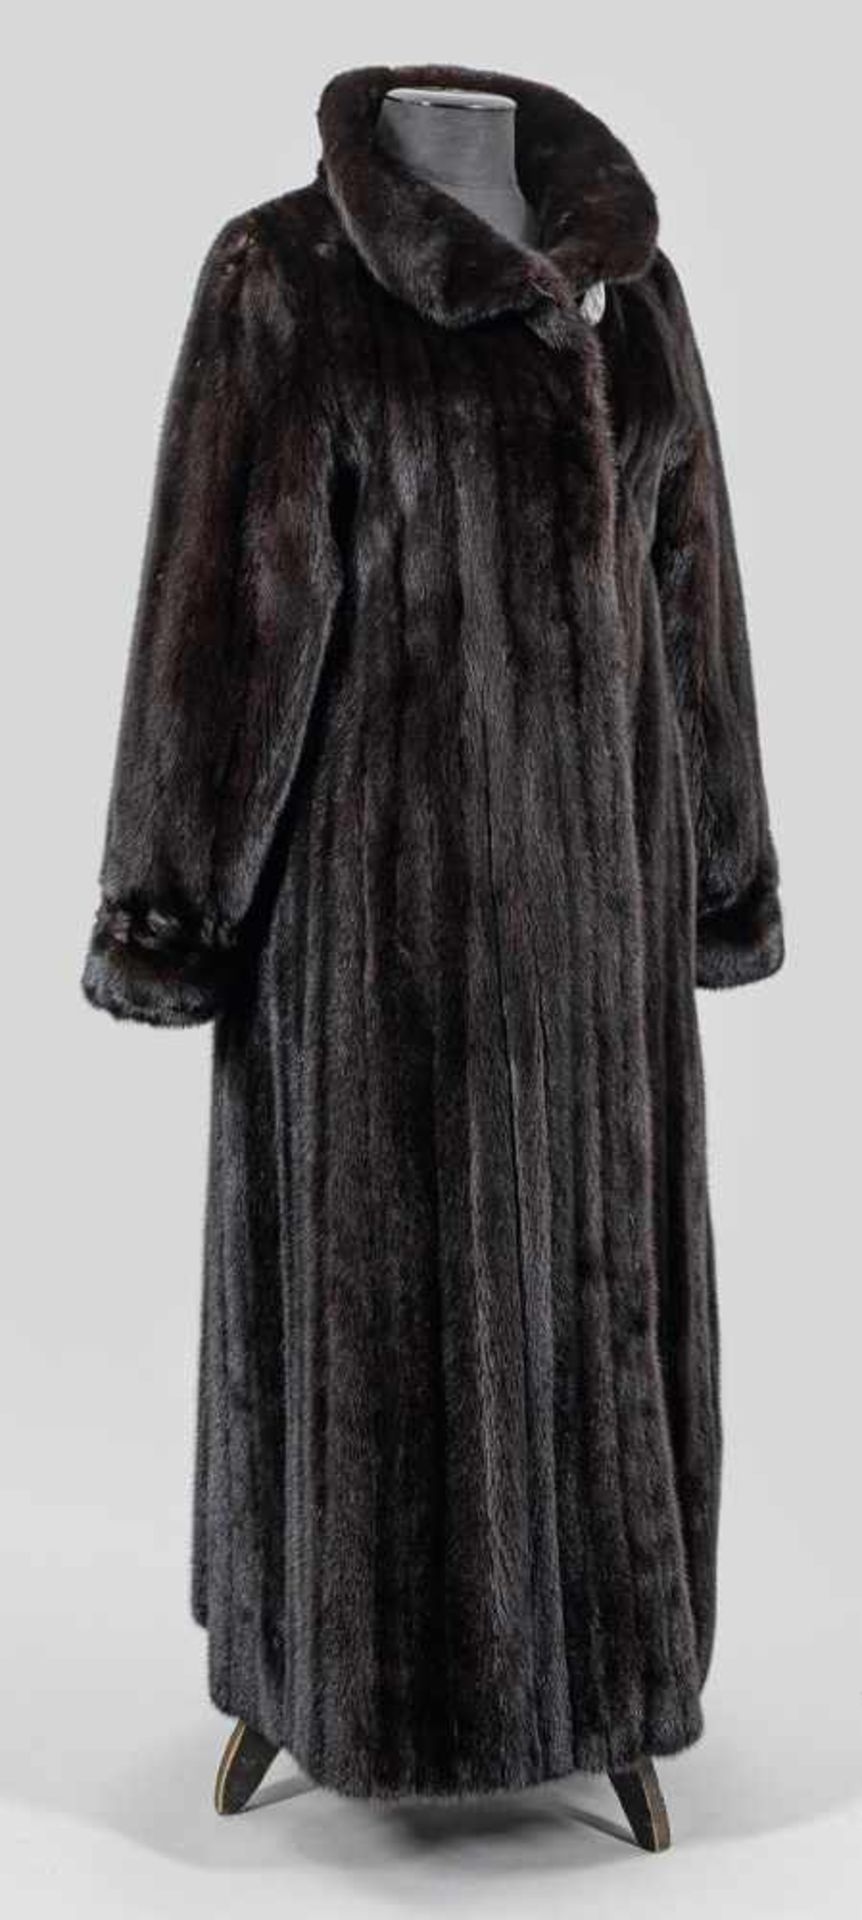 Langer Damen-NerzmantelKnöchellanger, weit geschnittener Mantel aus schwarz-braunem, ausgelassen